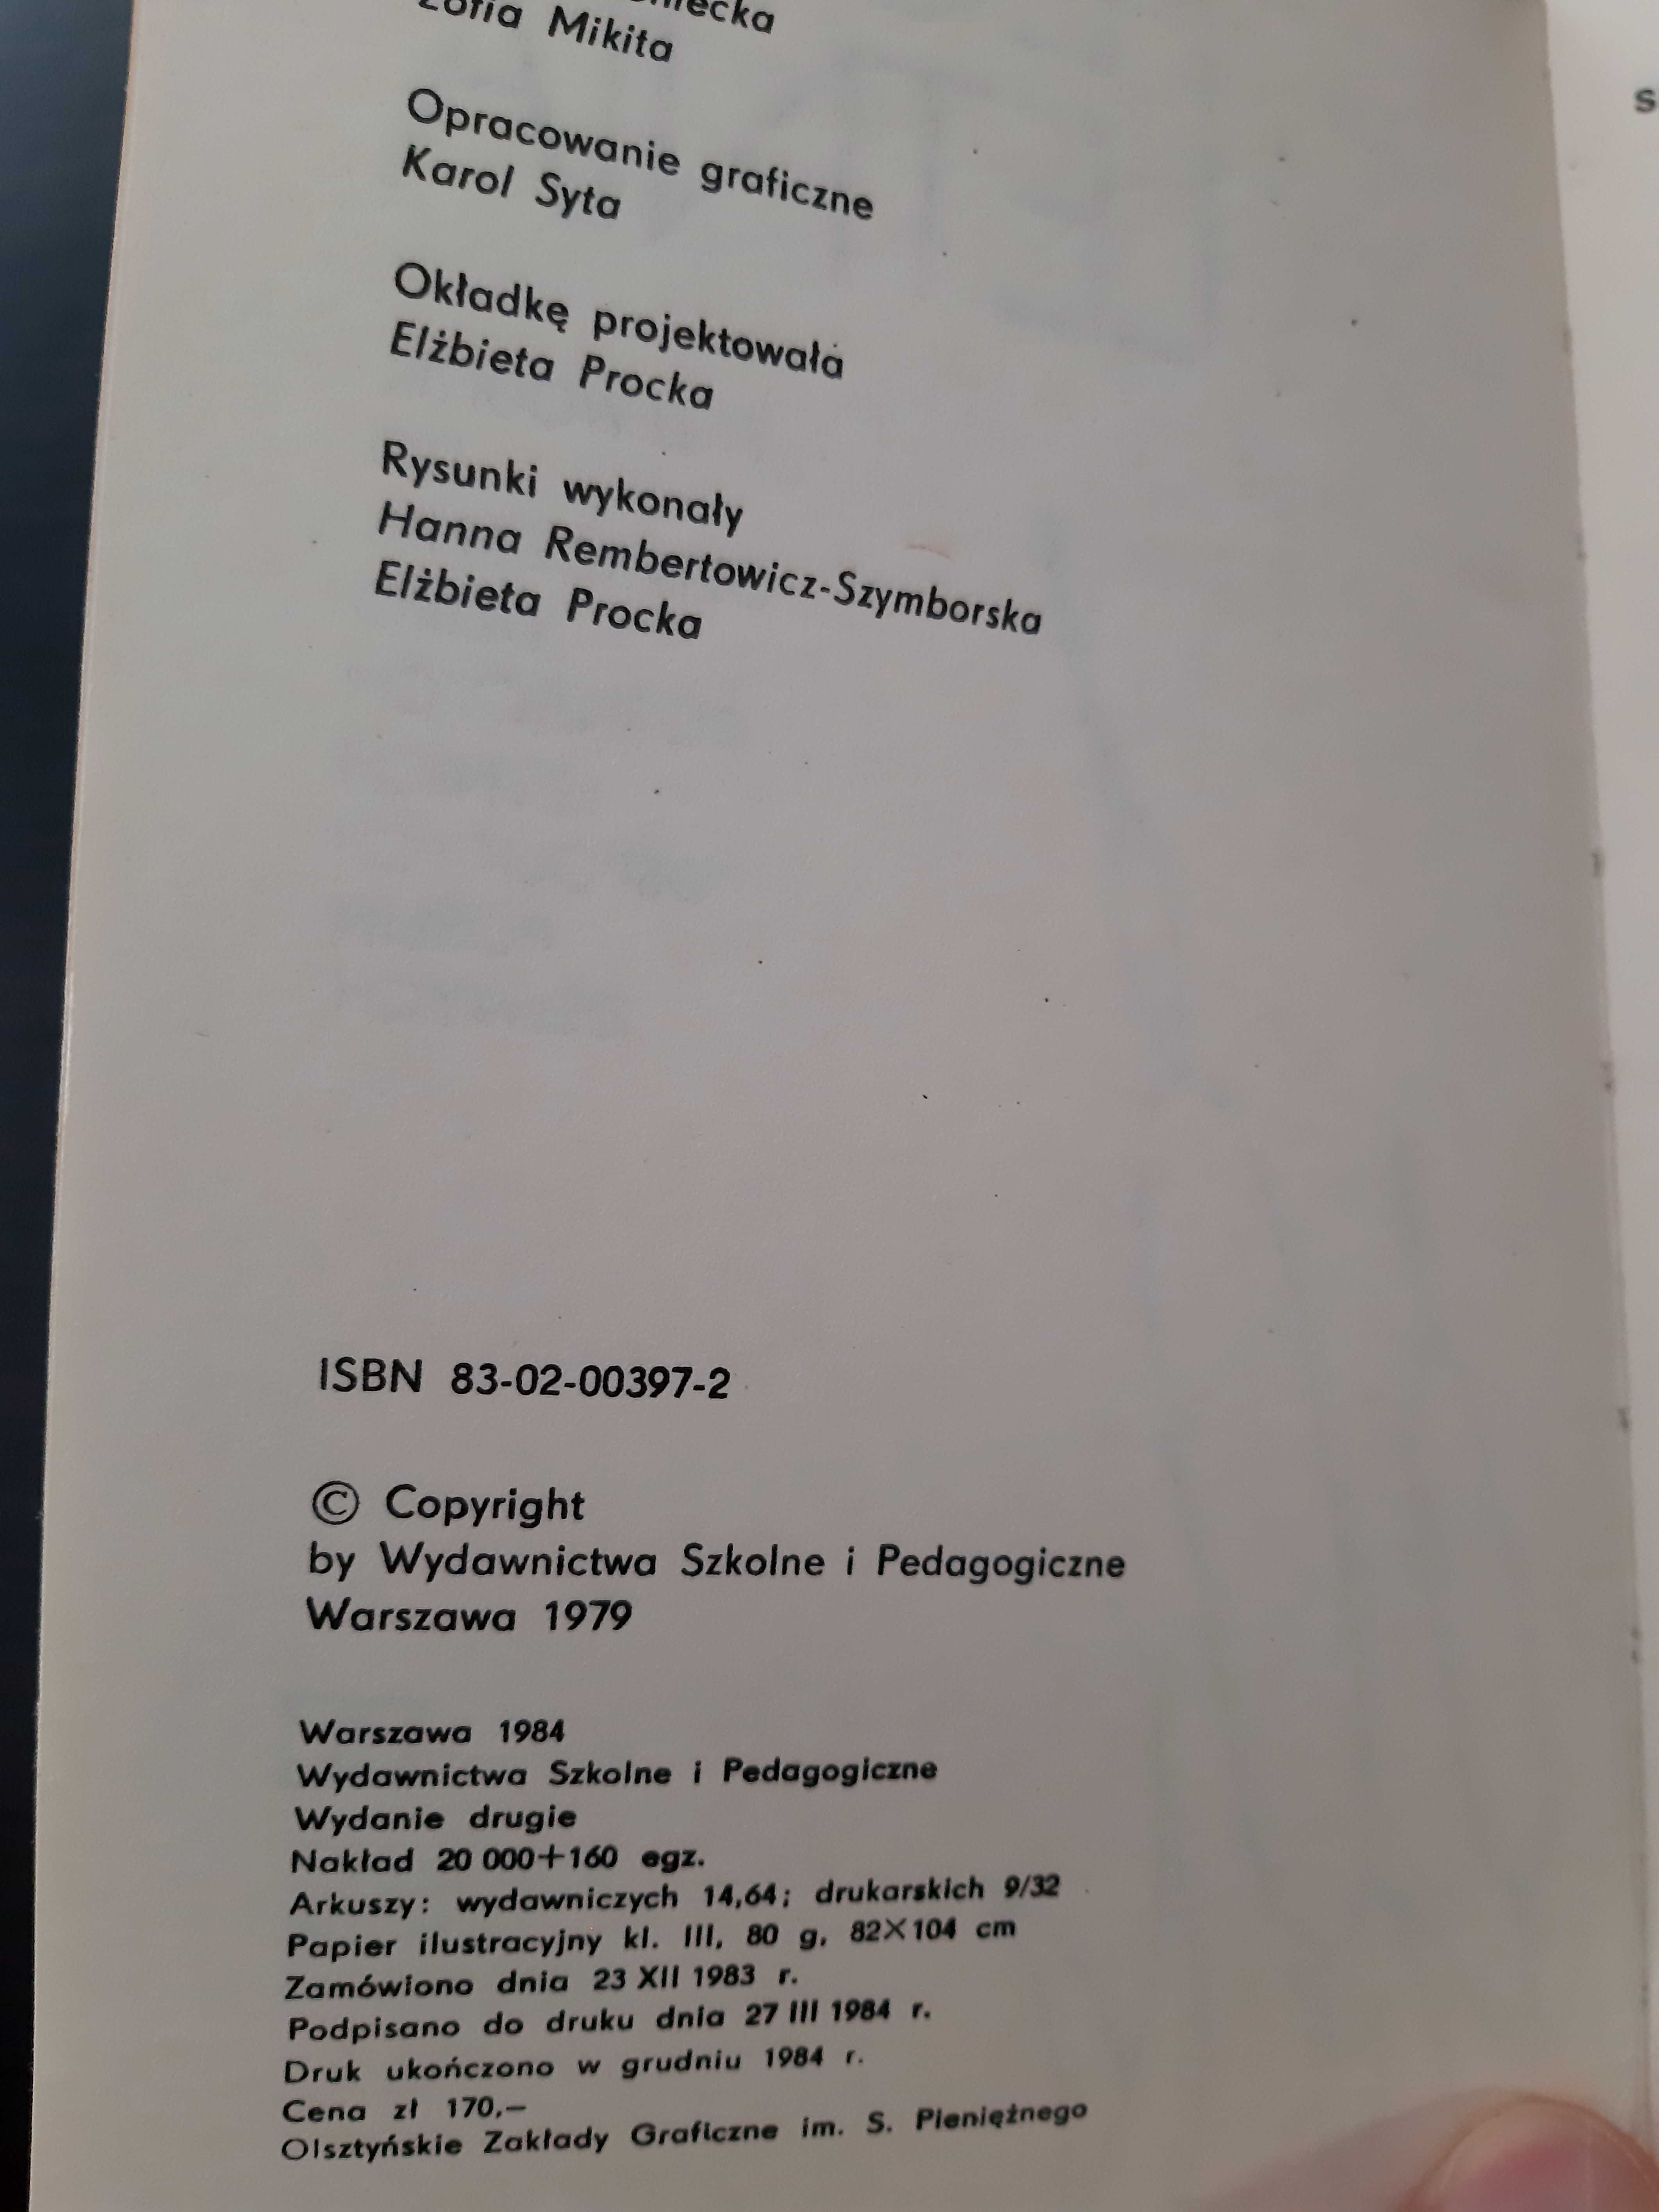 Flora letnia Jakub Mowszowicz wydanie 1984